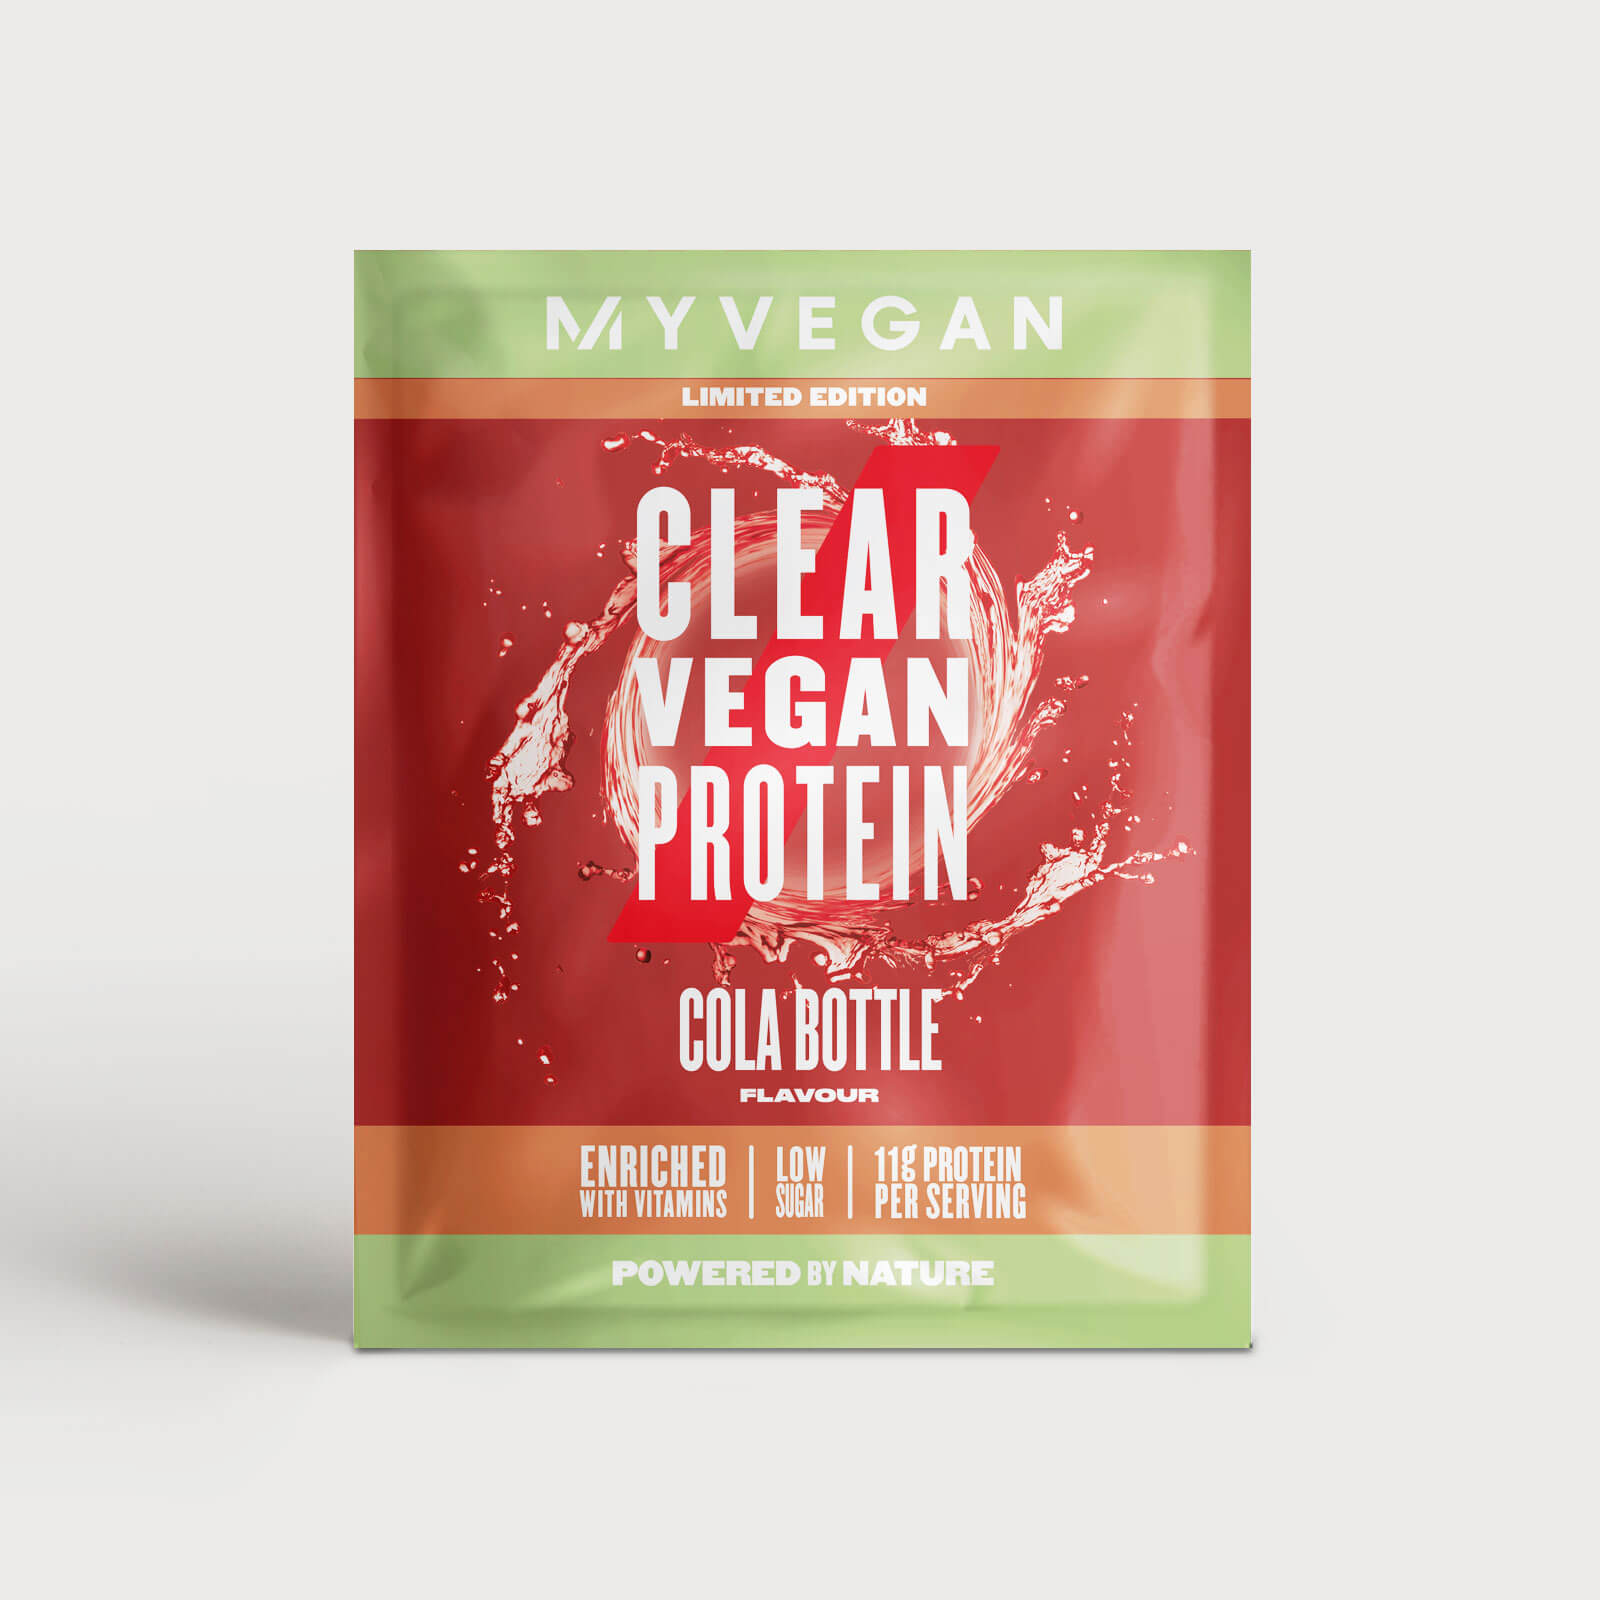 Clear Vegan Protein (échantillon) - 15g - Cola Bottle